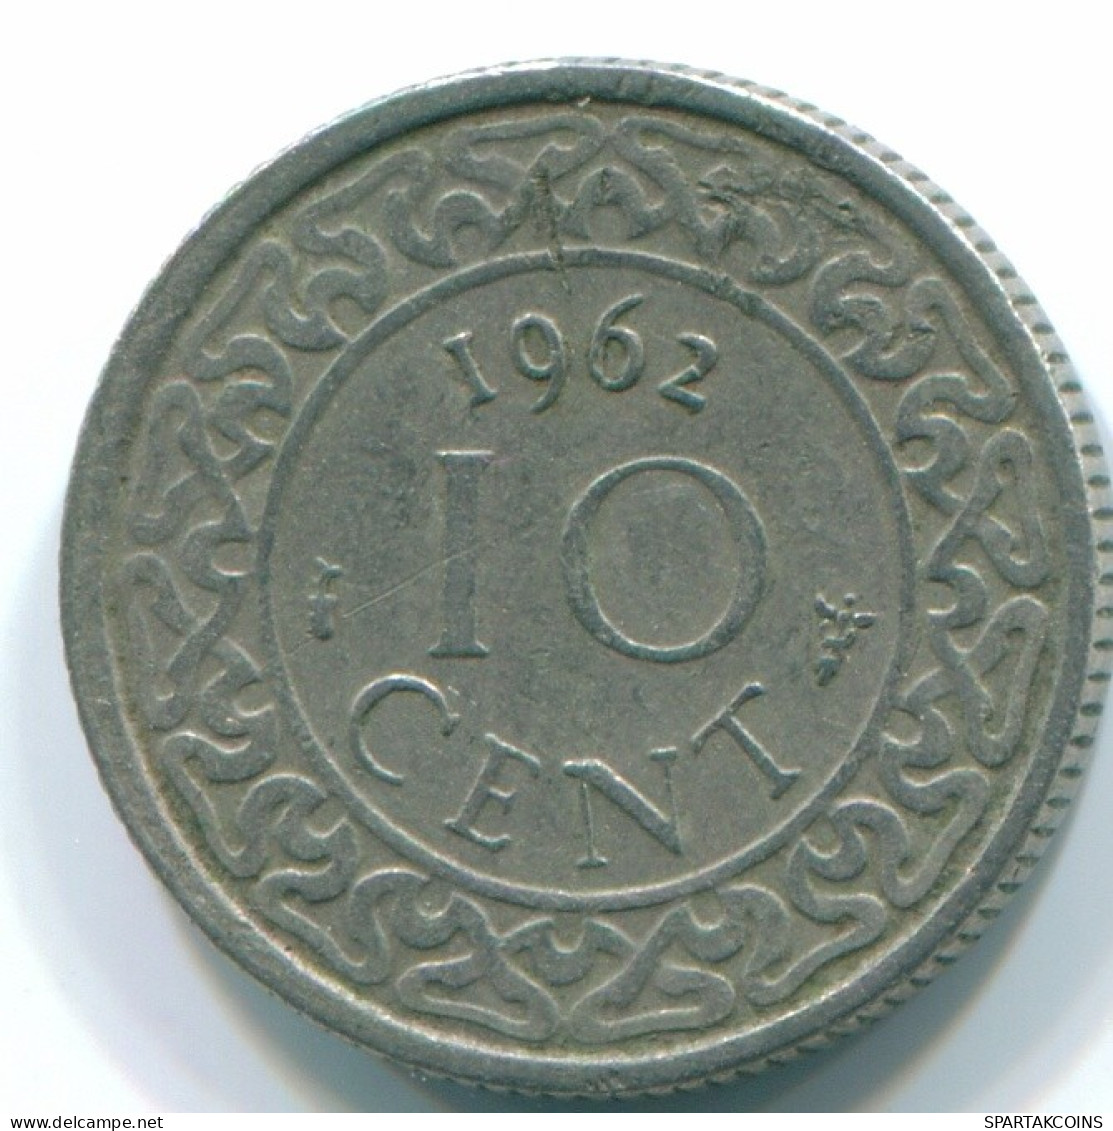 10 CENTS 1962 SURINAM NIEDERLANDE Nickel Koloniale Münze #S13186.D.A - Suriname 1975 - ...